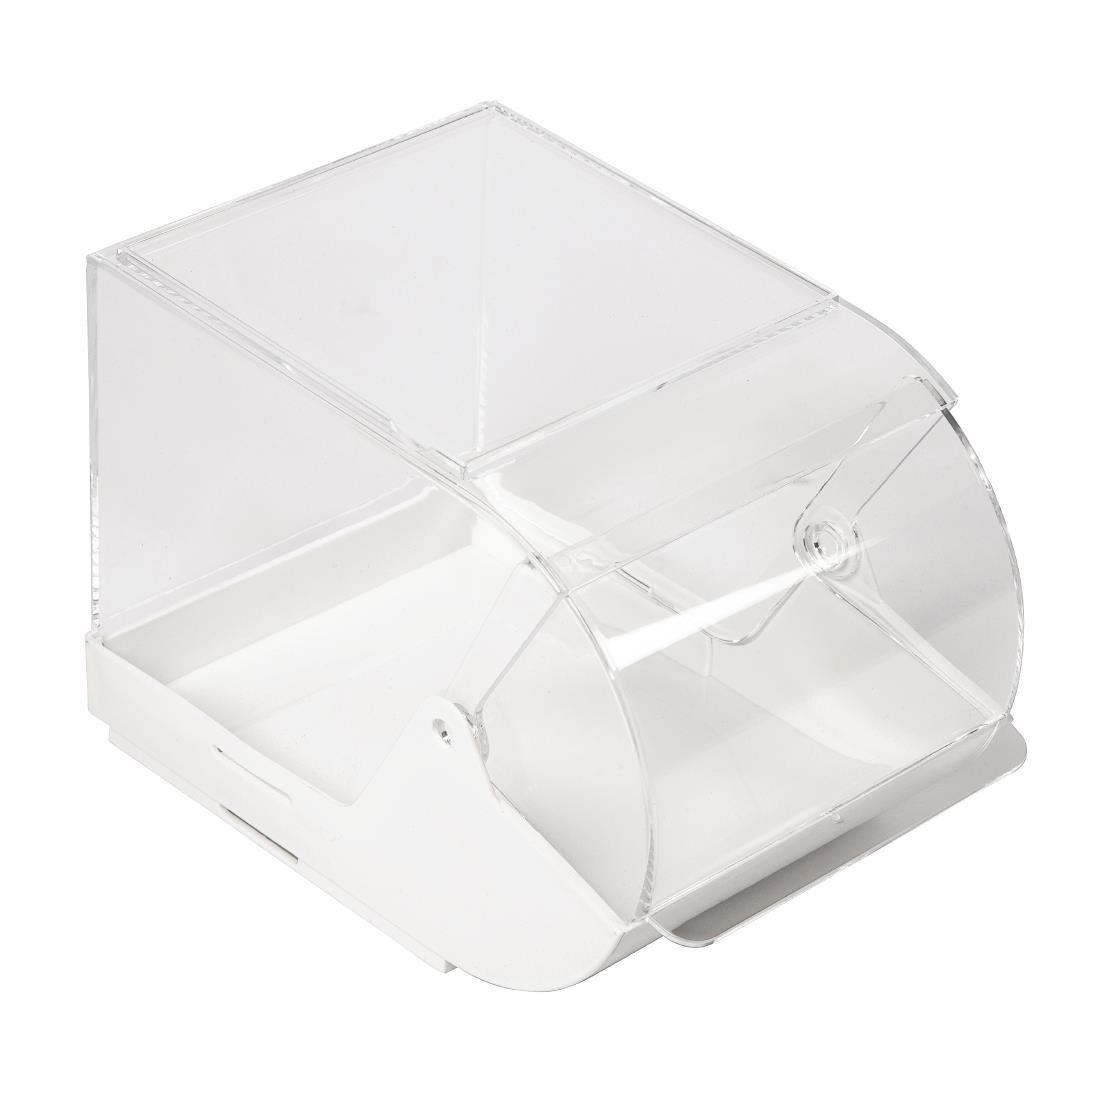 APS Sachet Dispenser Box White - GL627  - 4